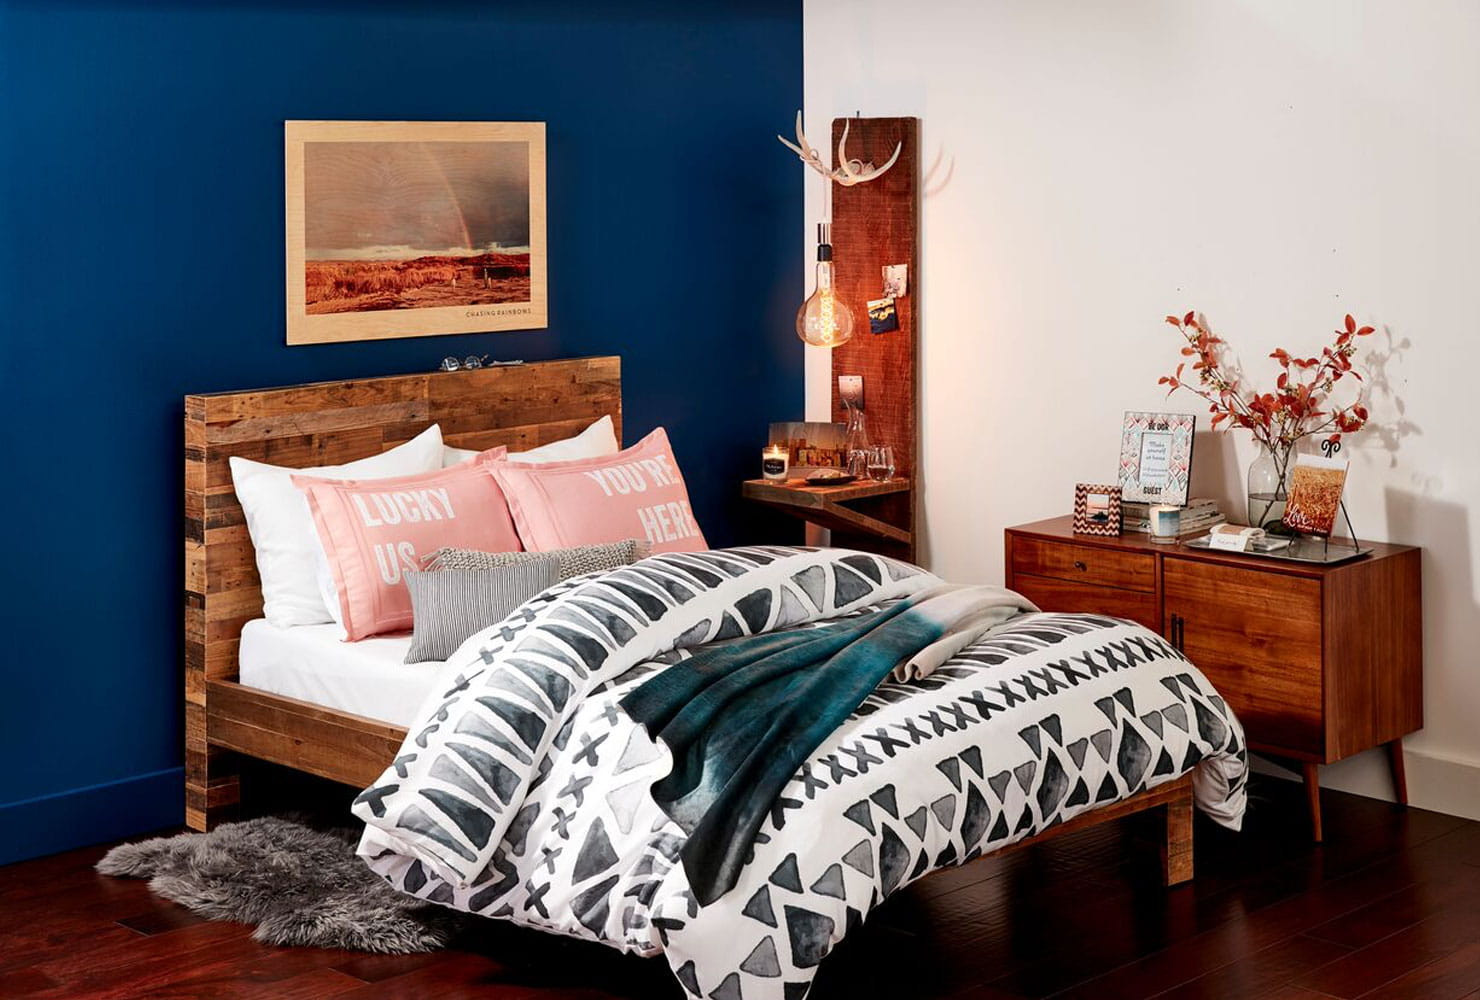 Diy Bedroom Decor
 24 DIY Bedroom Decor Ideas To Inspire You With Printables